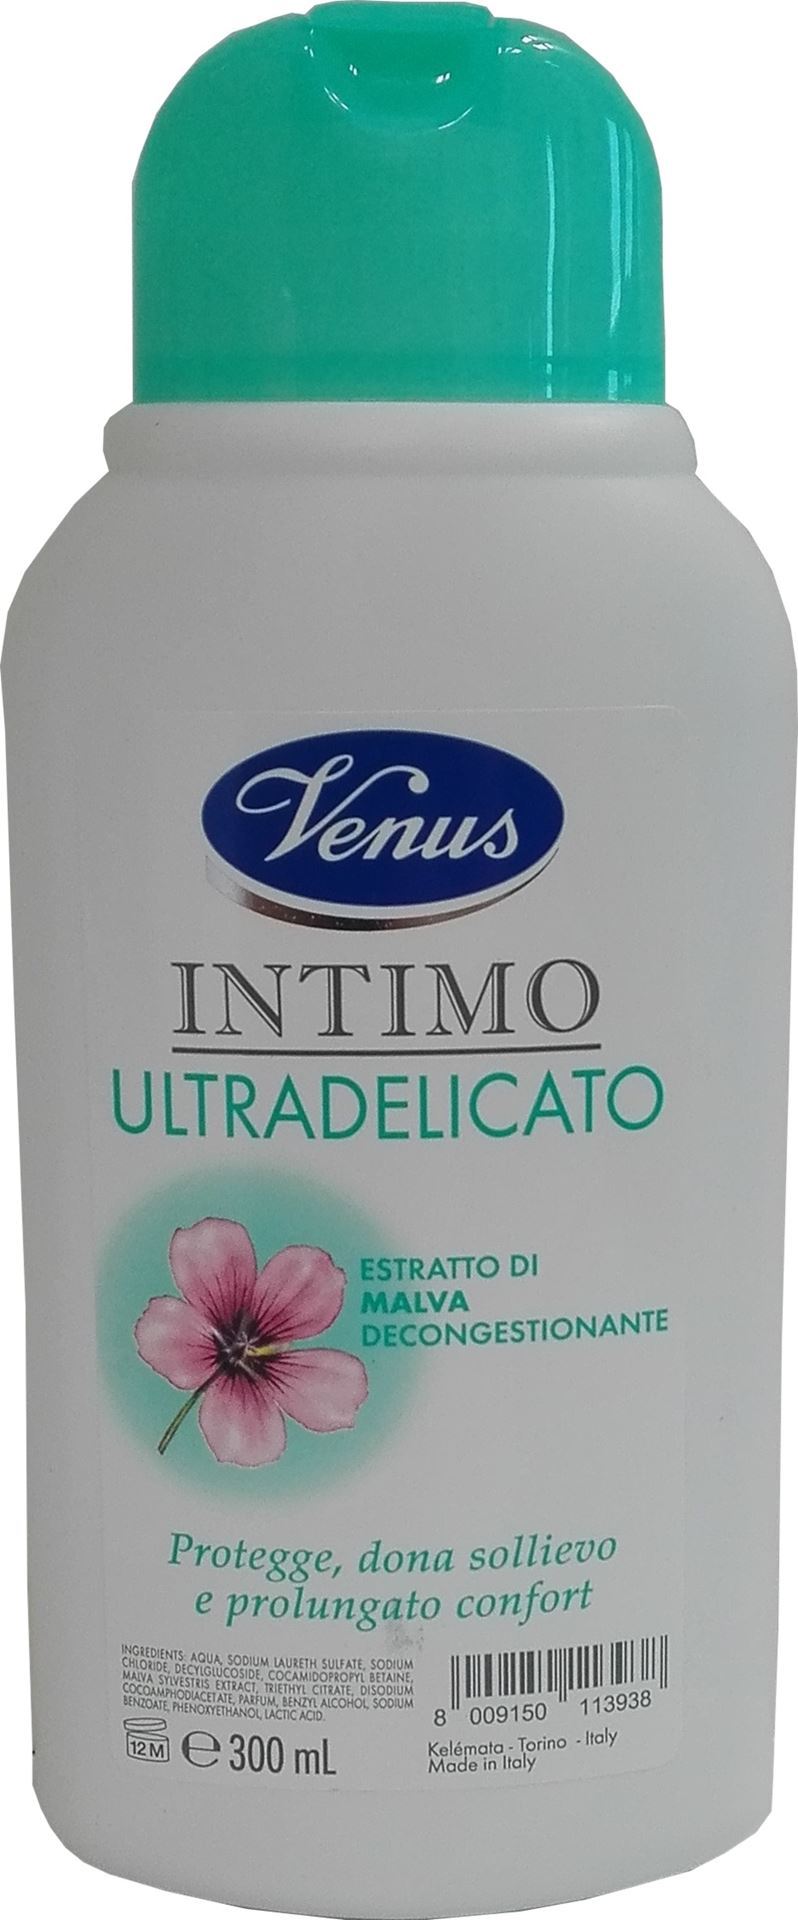 Venus extra jemný intimní gel se slézem, 300 ml